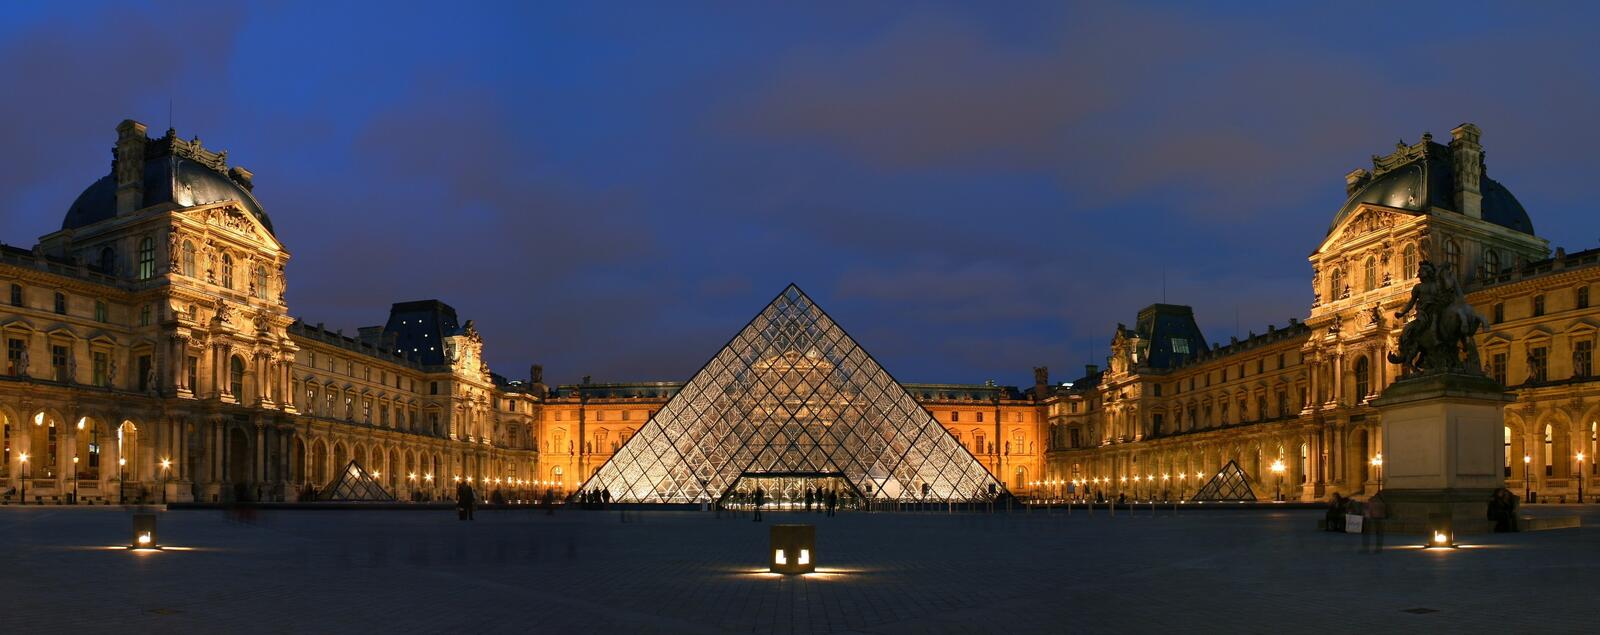 免费照片巴黎的卢浮宫-